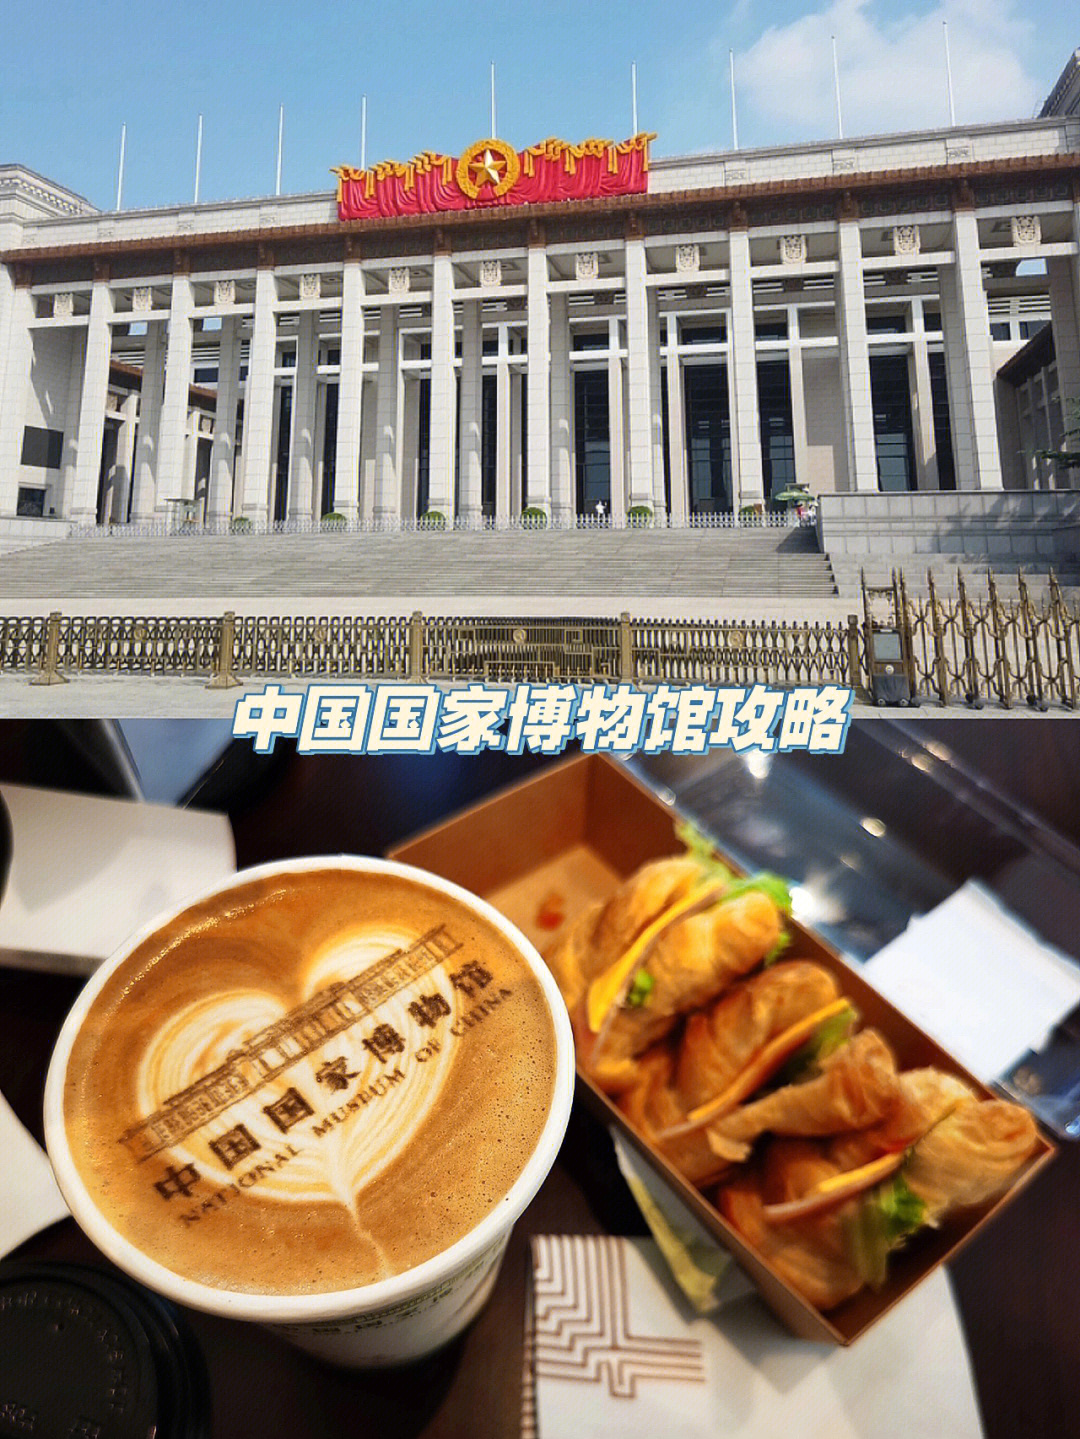 中国国家博物馆是不吃饭也要去的博物馆